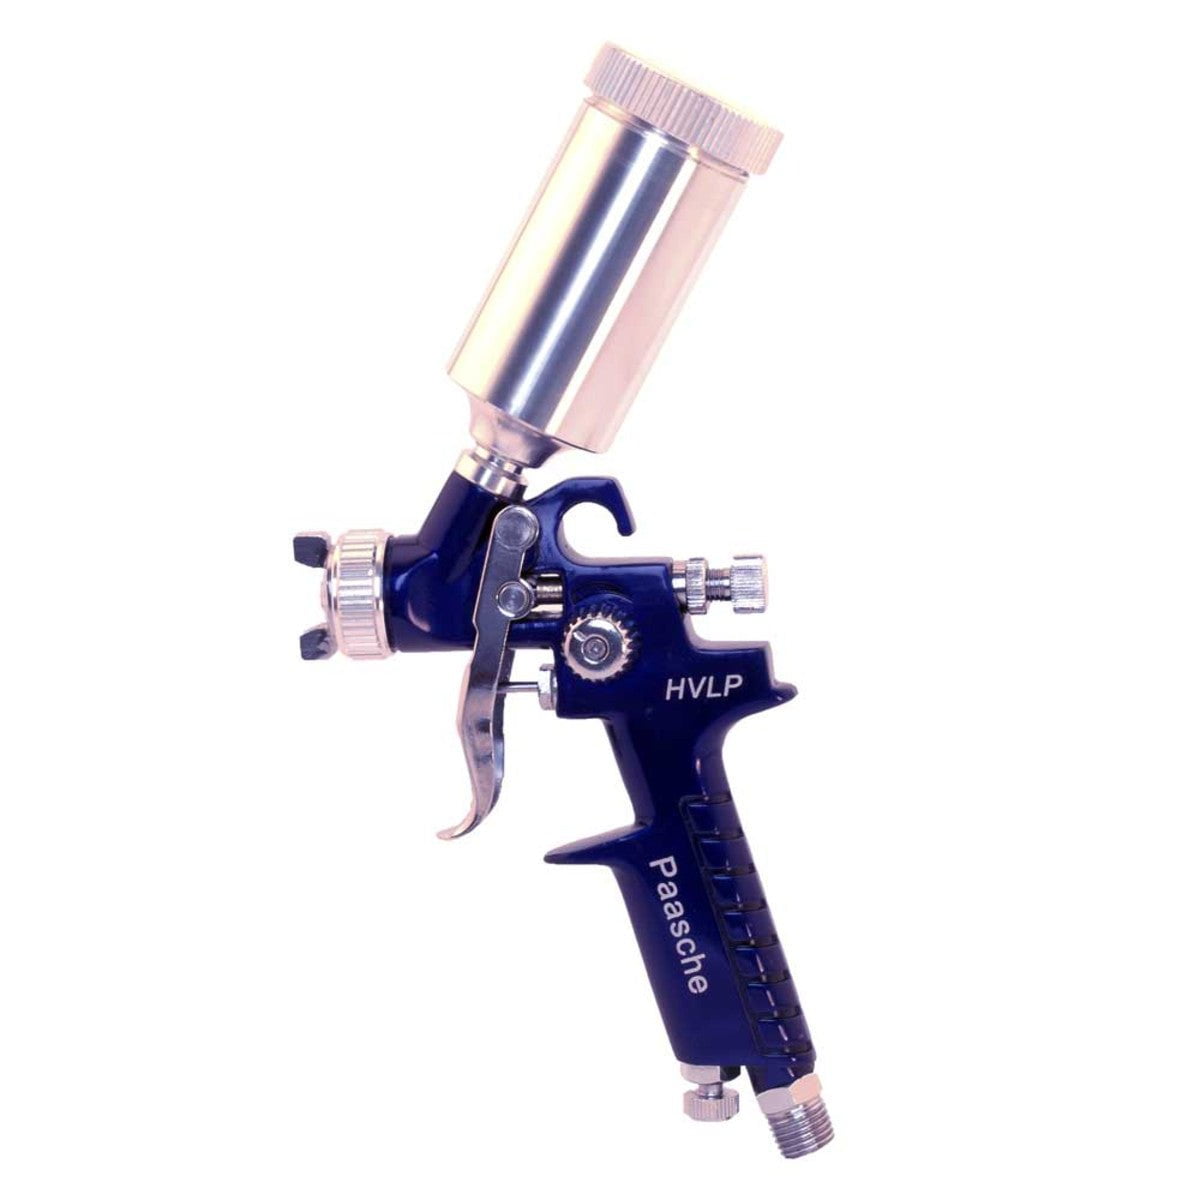 Paasche adapter to 1/8 BSP - SprayGunner